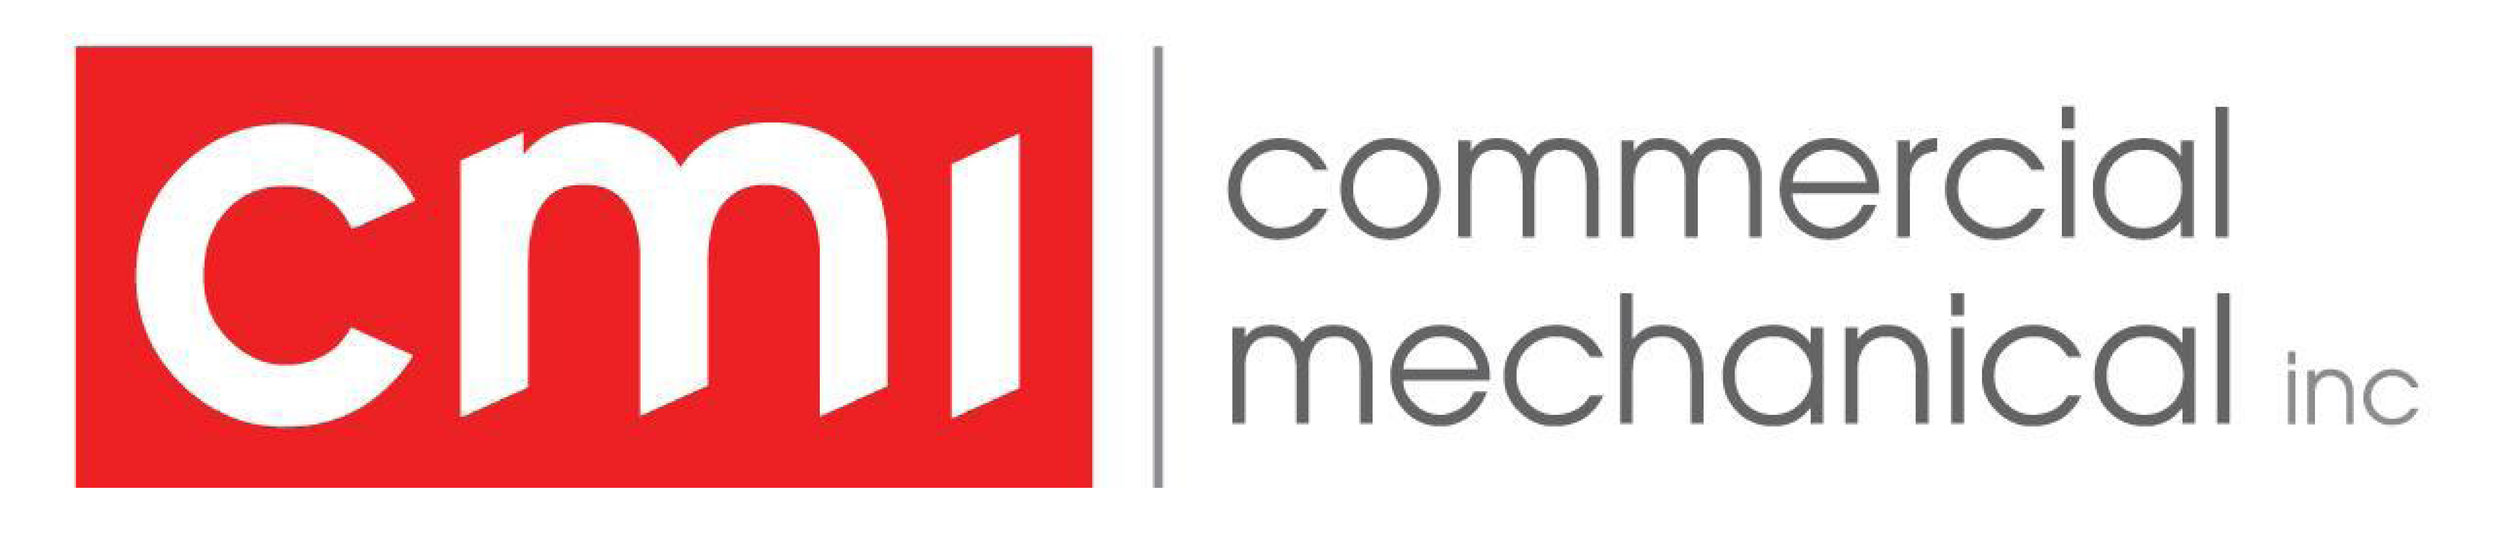 Commercial Mechanical Logo - Web.jpg